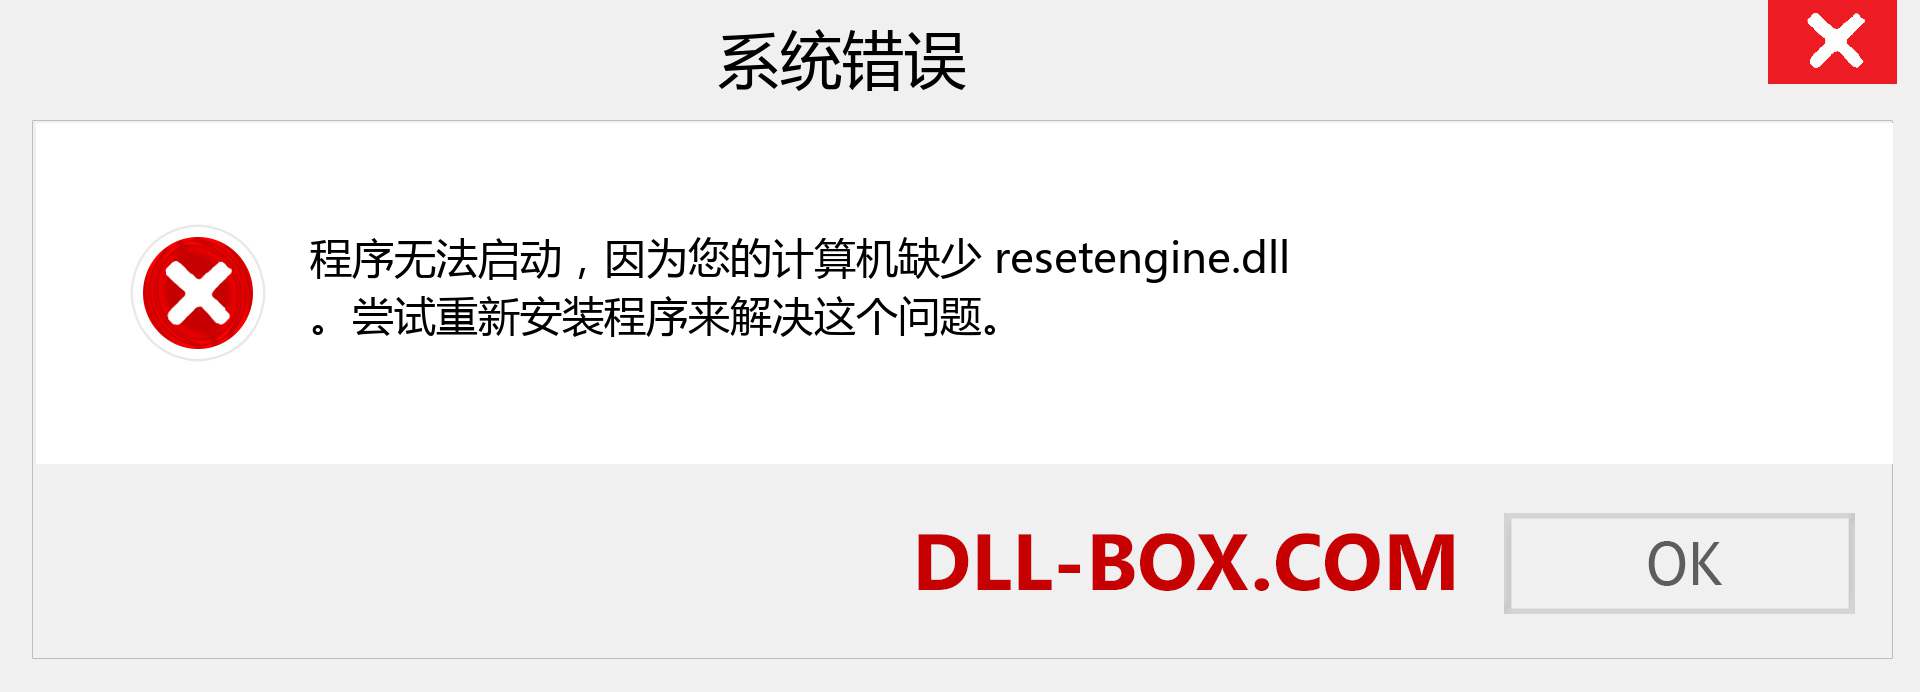 resetengine.dll 文件丢失？。 适用于 Windows 7、8、10 的下载 - 修复 Windows、照片、图像上的 resetengine dll 丢失错误